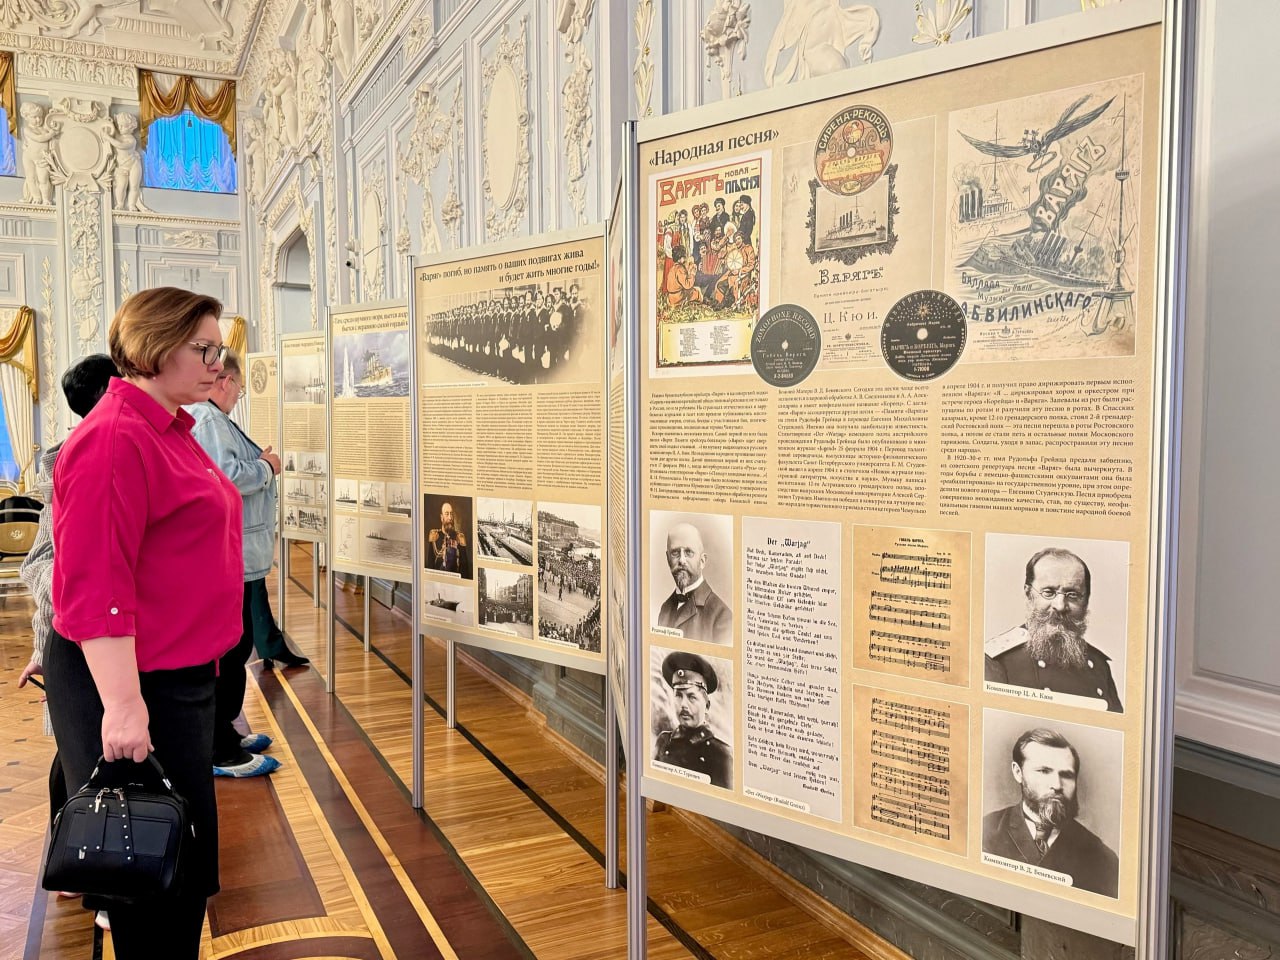 Выставка «Варяг» идет свершать свой подвиг славный» открылась в Нижнем Новгороде